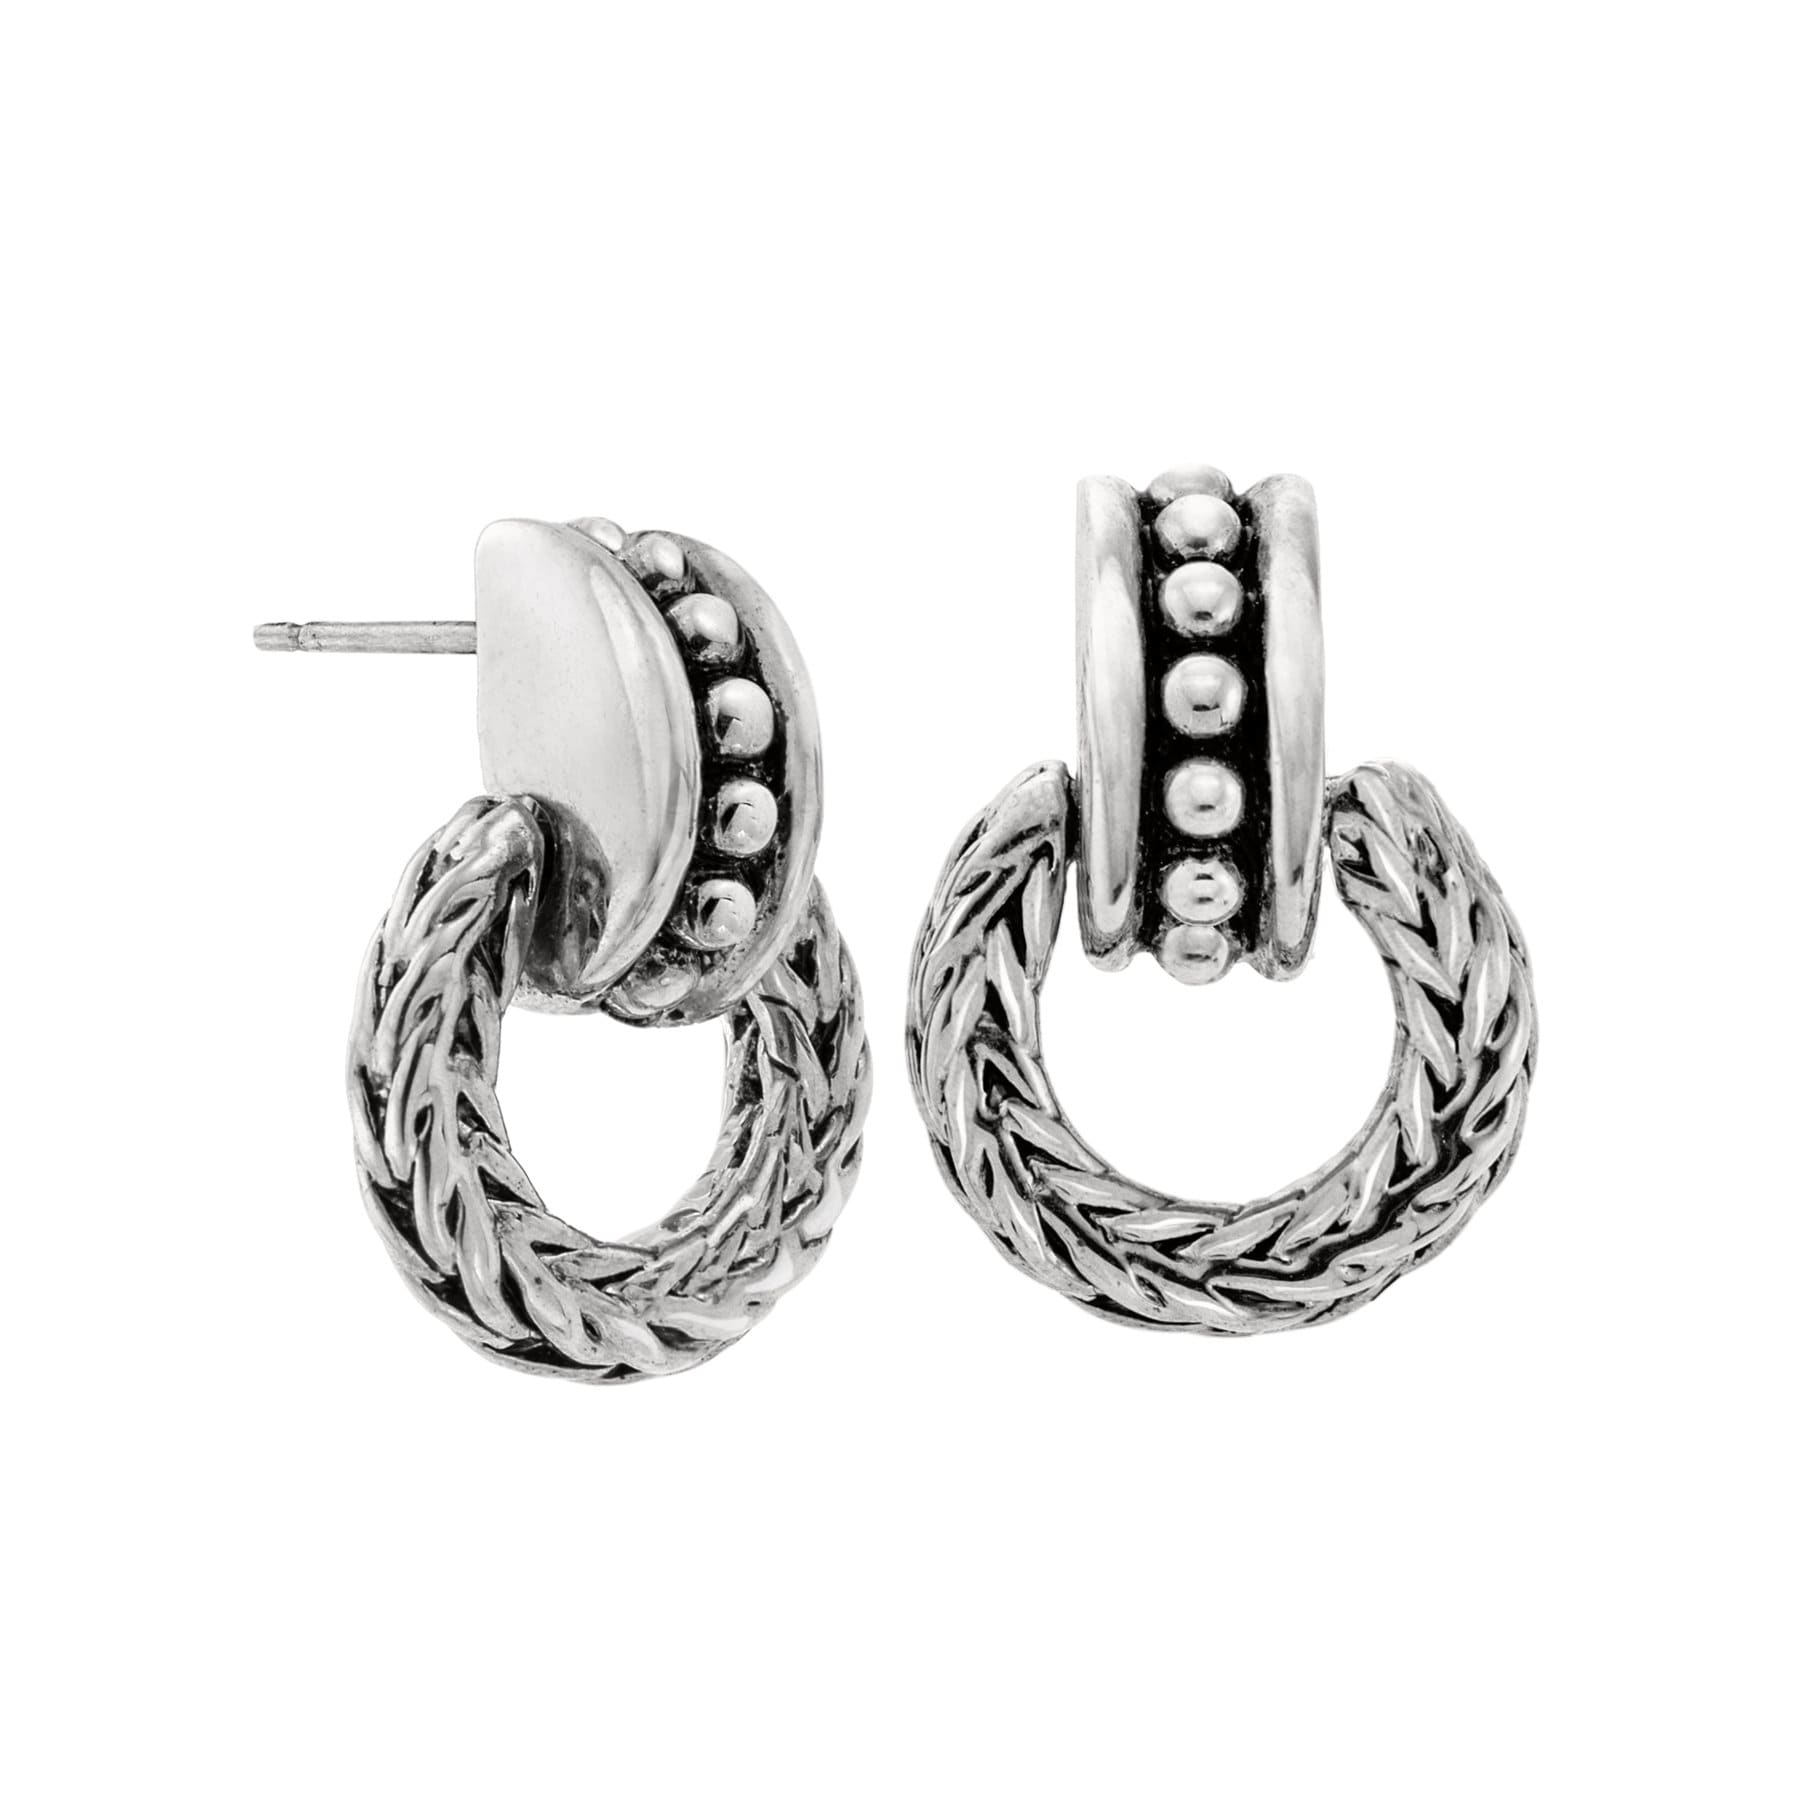 Vintage Earrings Oscar De La Renta Antique Silver Tone Braided Dangling Hoops Earrings #OS106 - Limited Stock - Never Worn